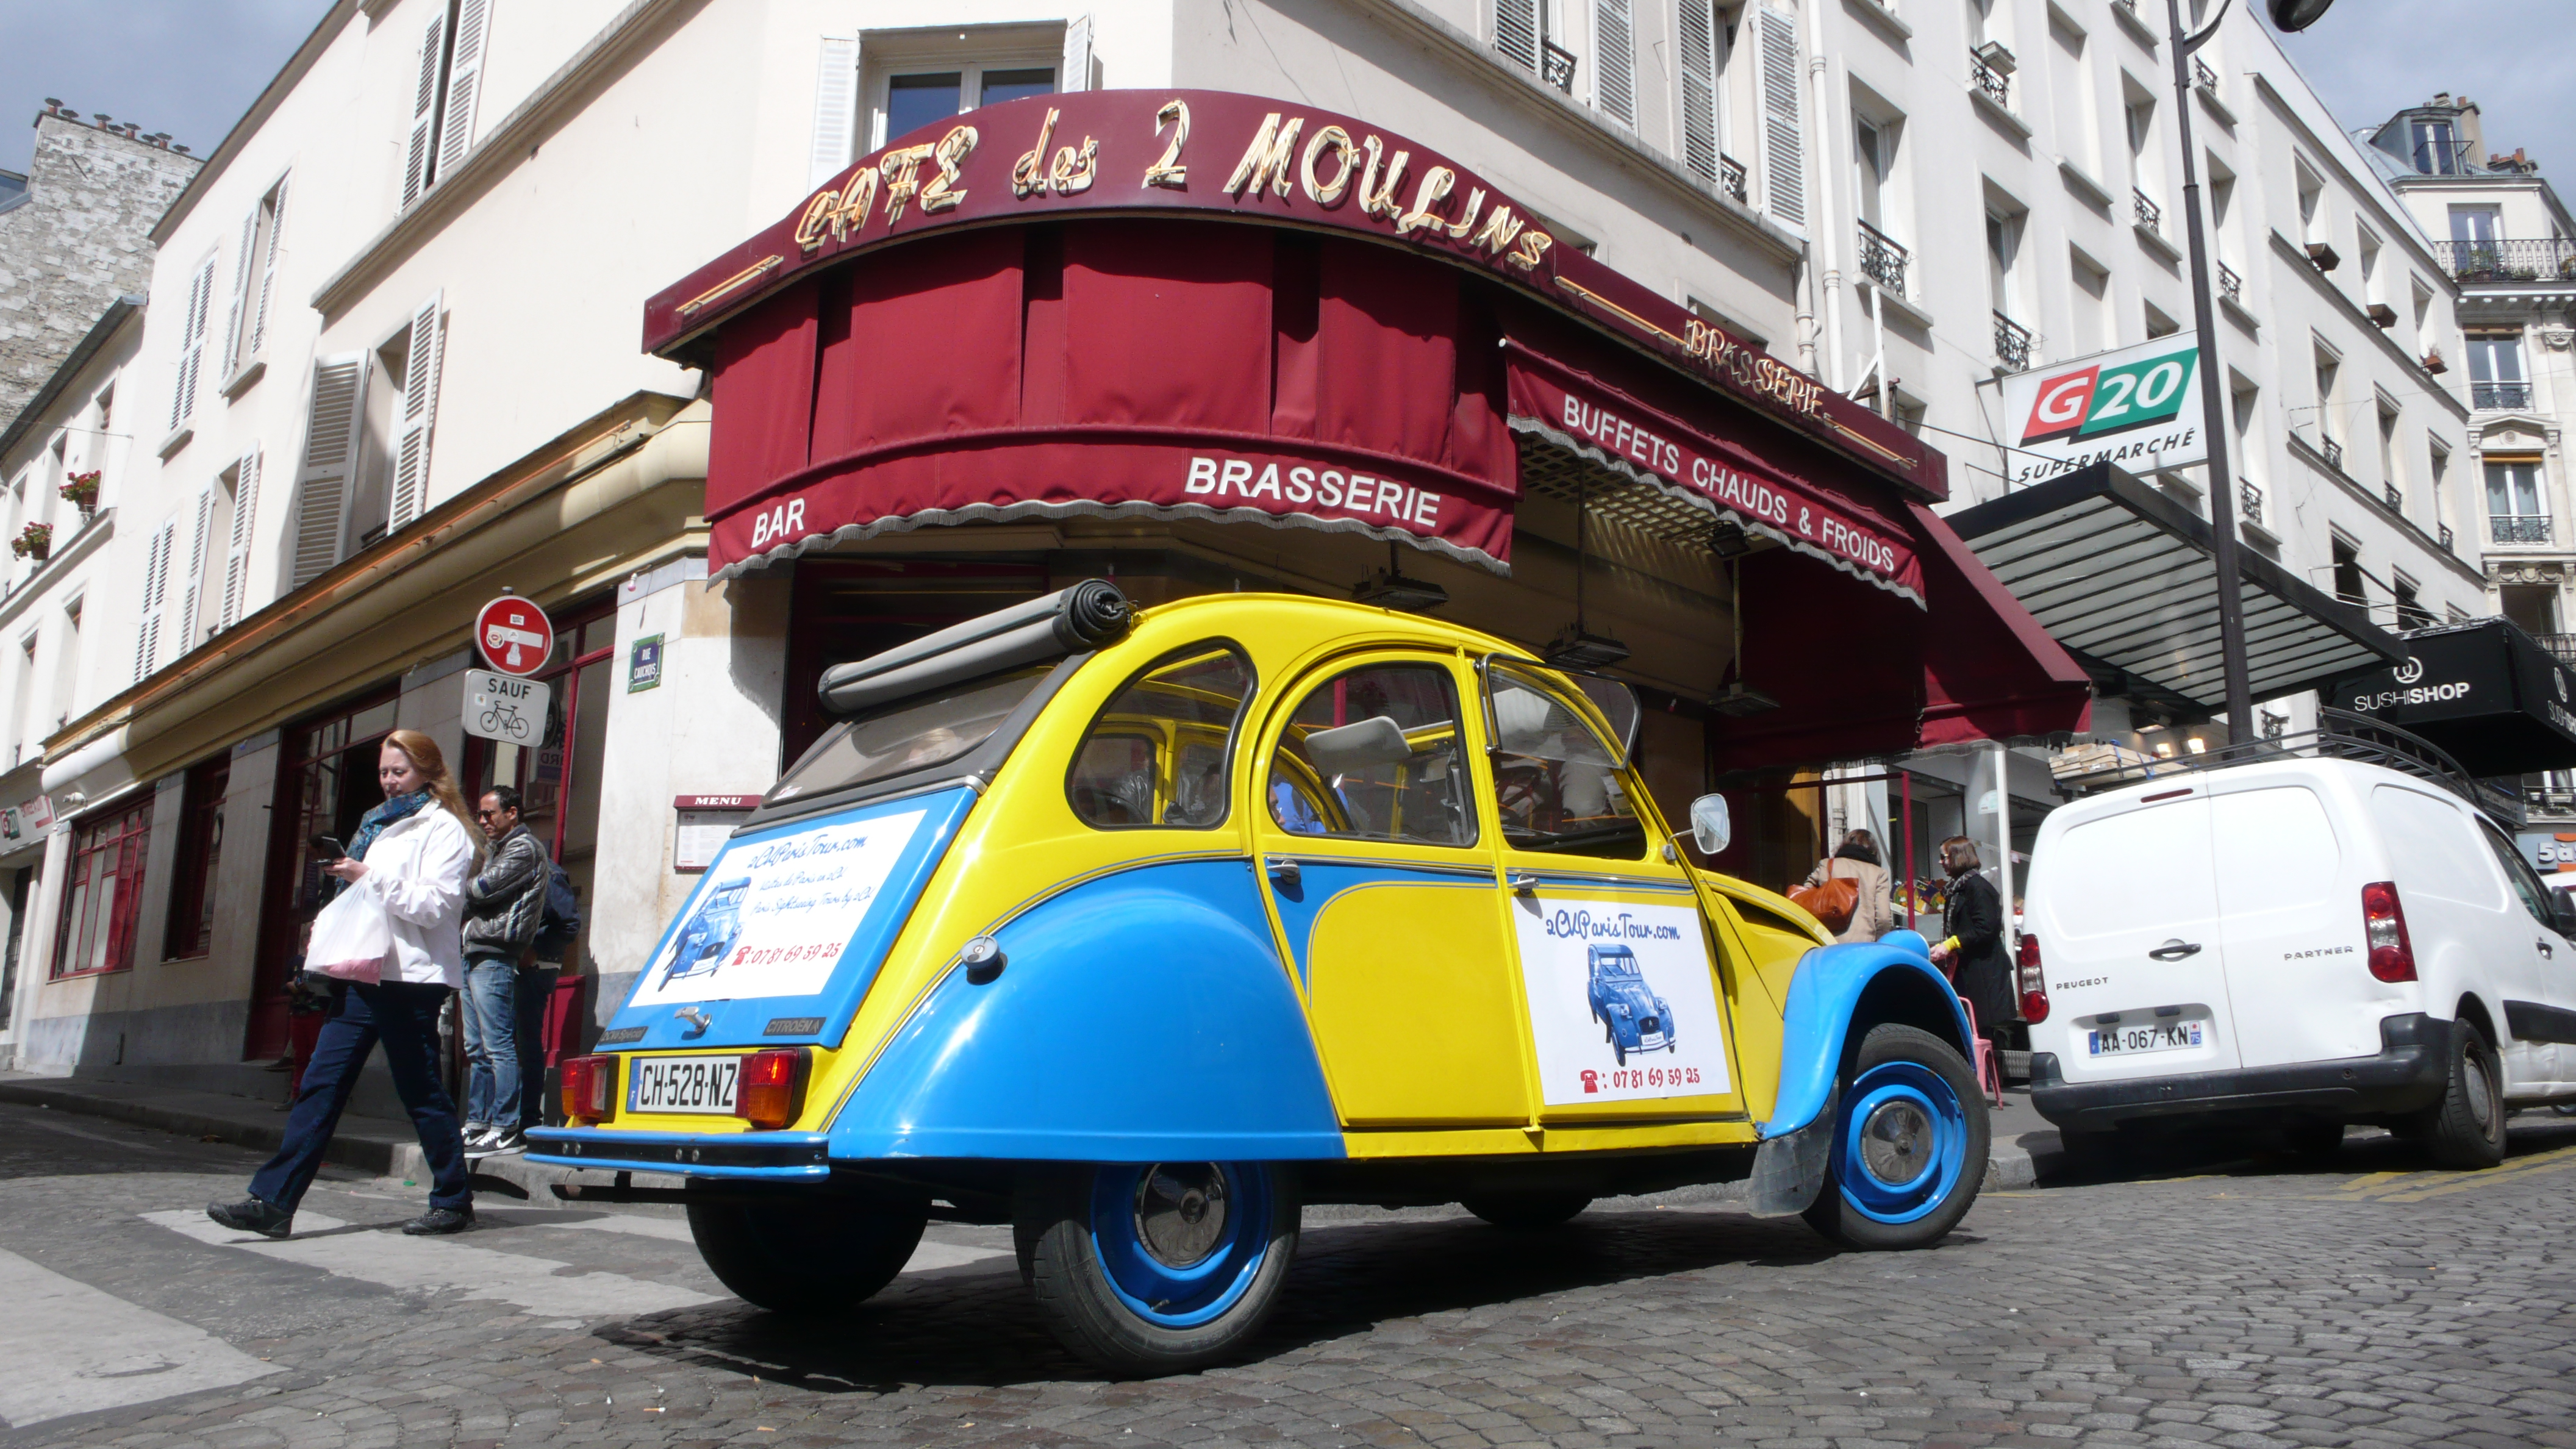 2CVParisTour : Balades en 2CV à Paris! Le Café des deux Moulins